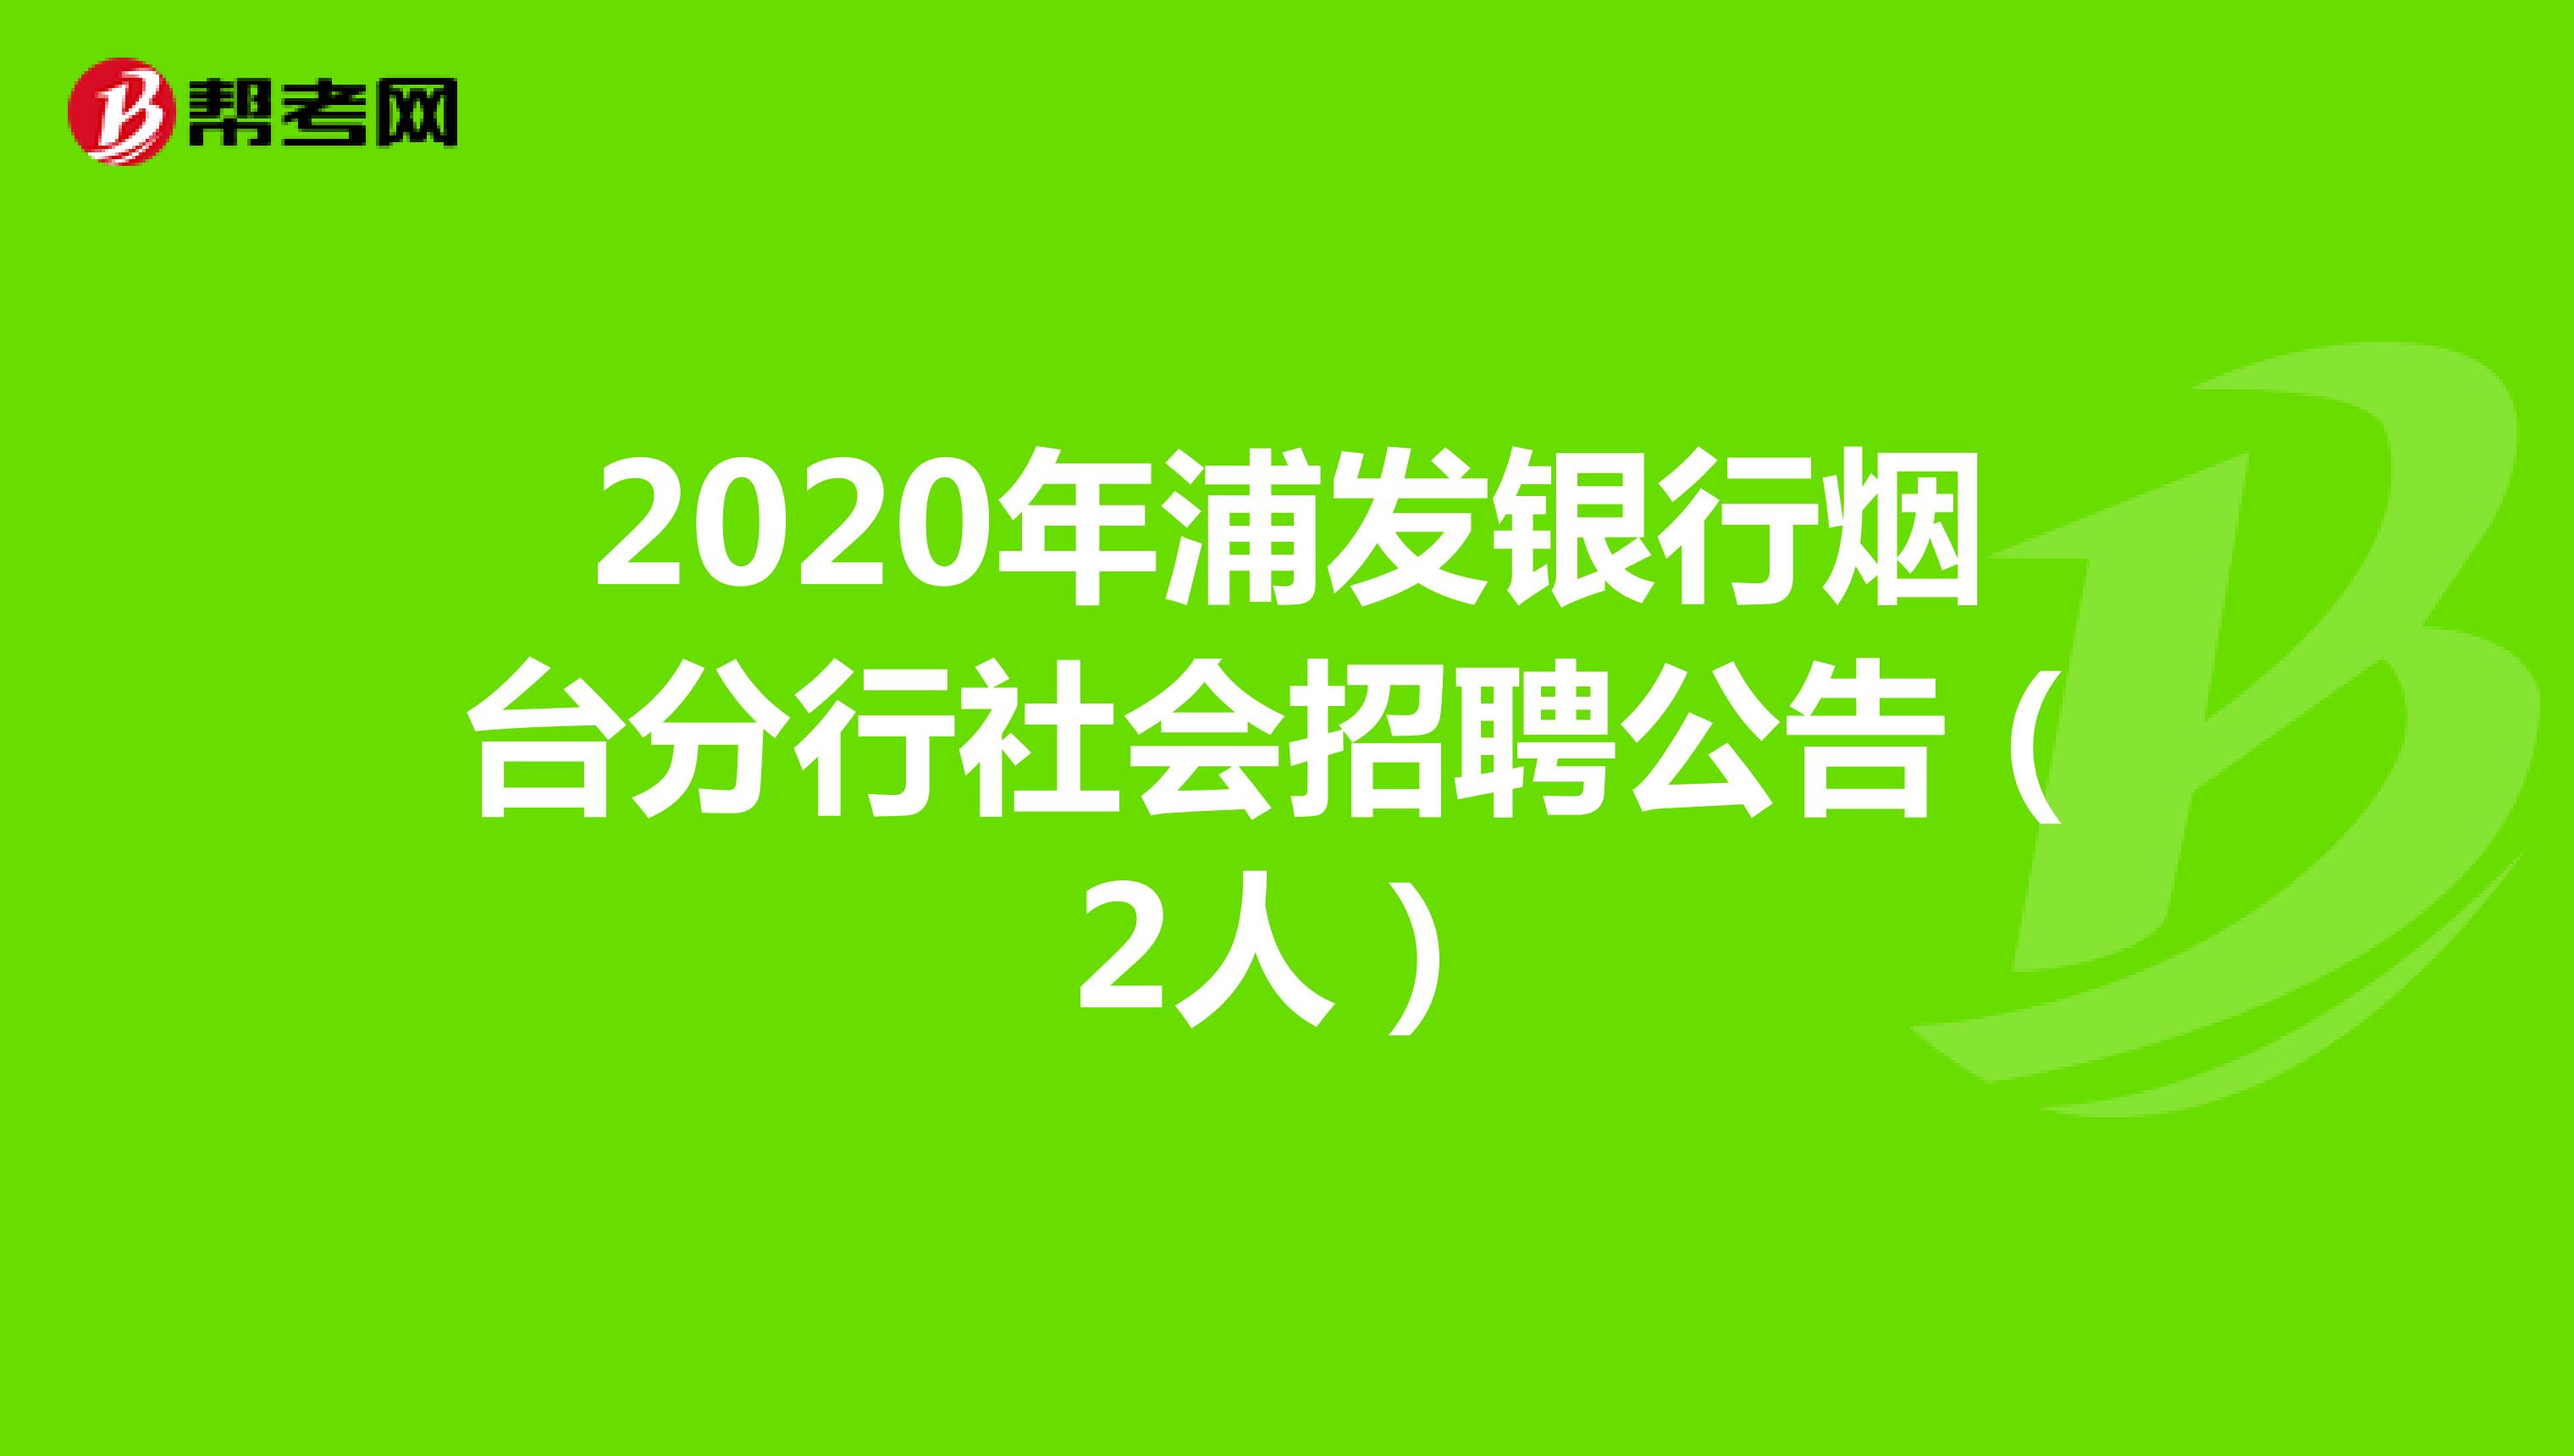 2020年浦发银行烟台分行社会招聘公告（2人）